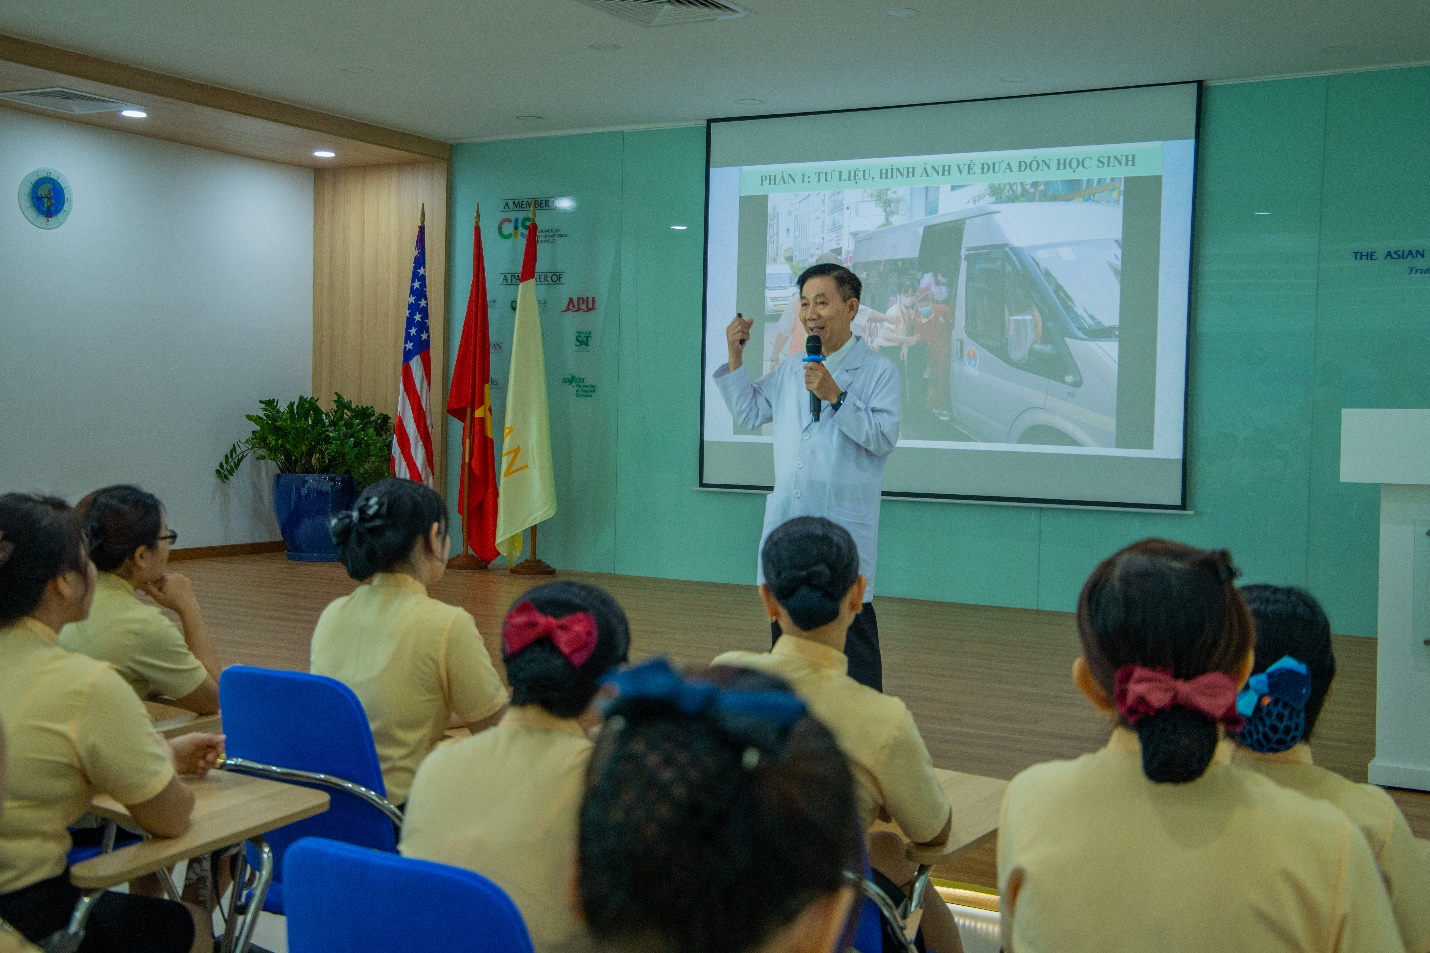 Tập huấn nhân viên đưa đón học sinh năm học 2022-2023